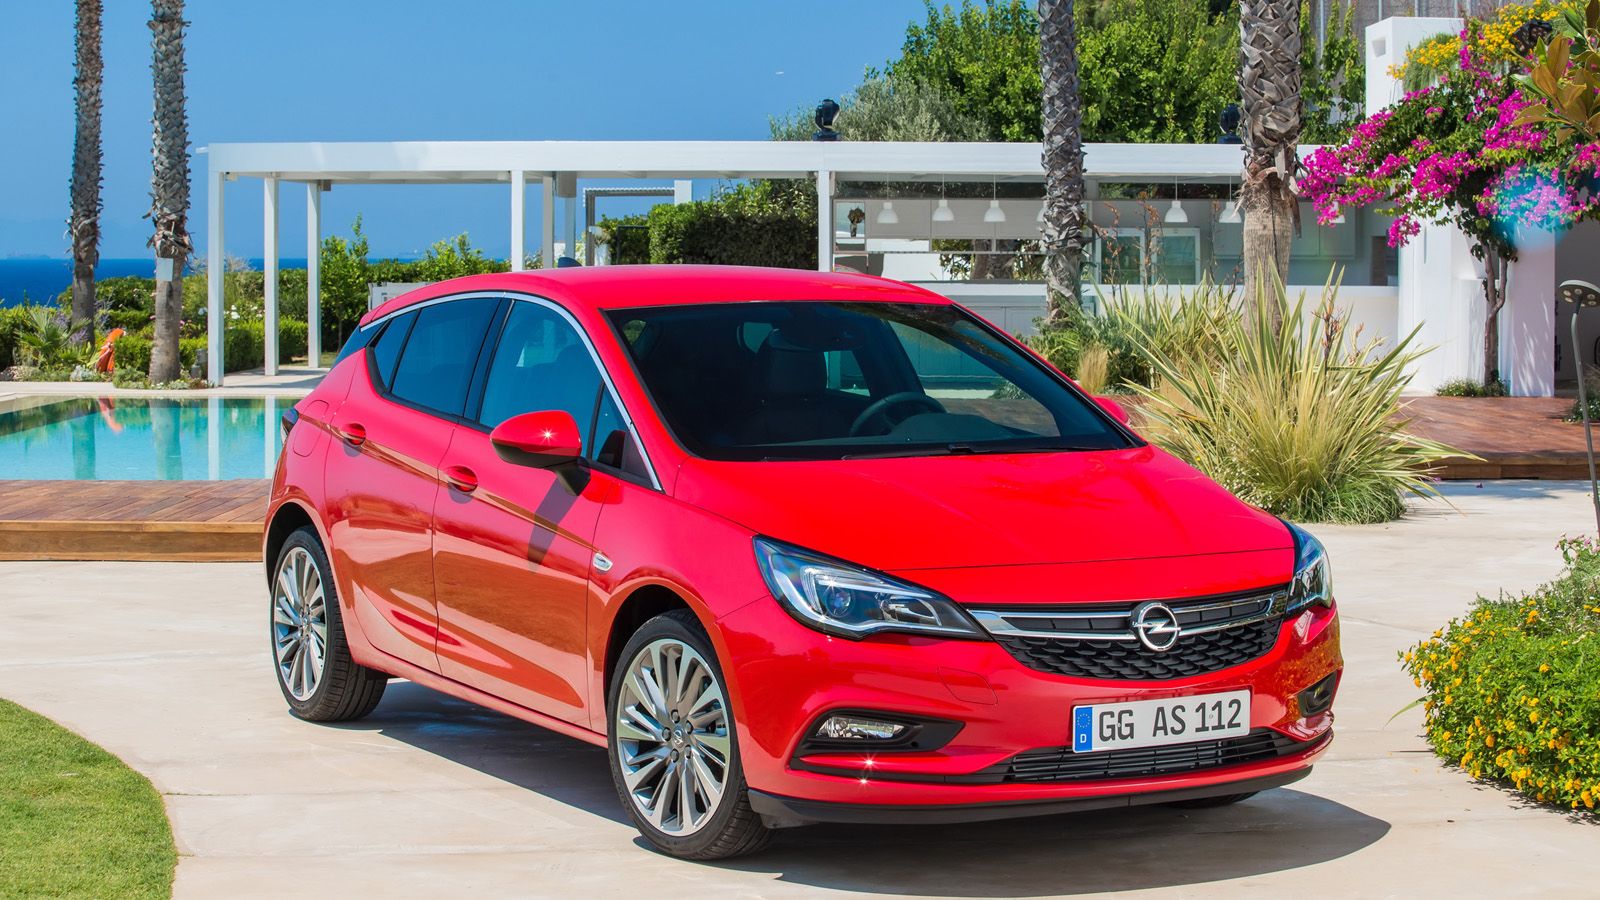   Αυτό είναι το νέο Opel Astra – Επίσημες φωτογραφίες